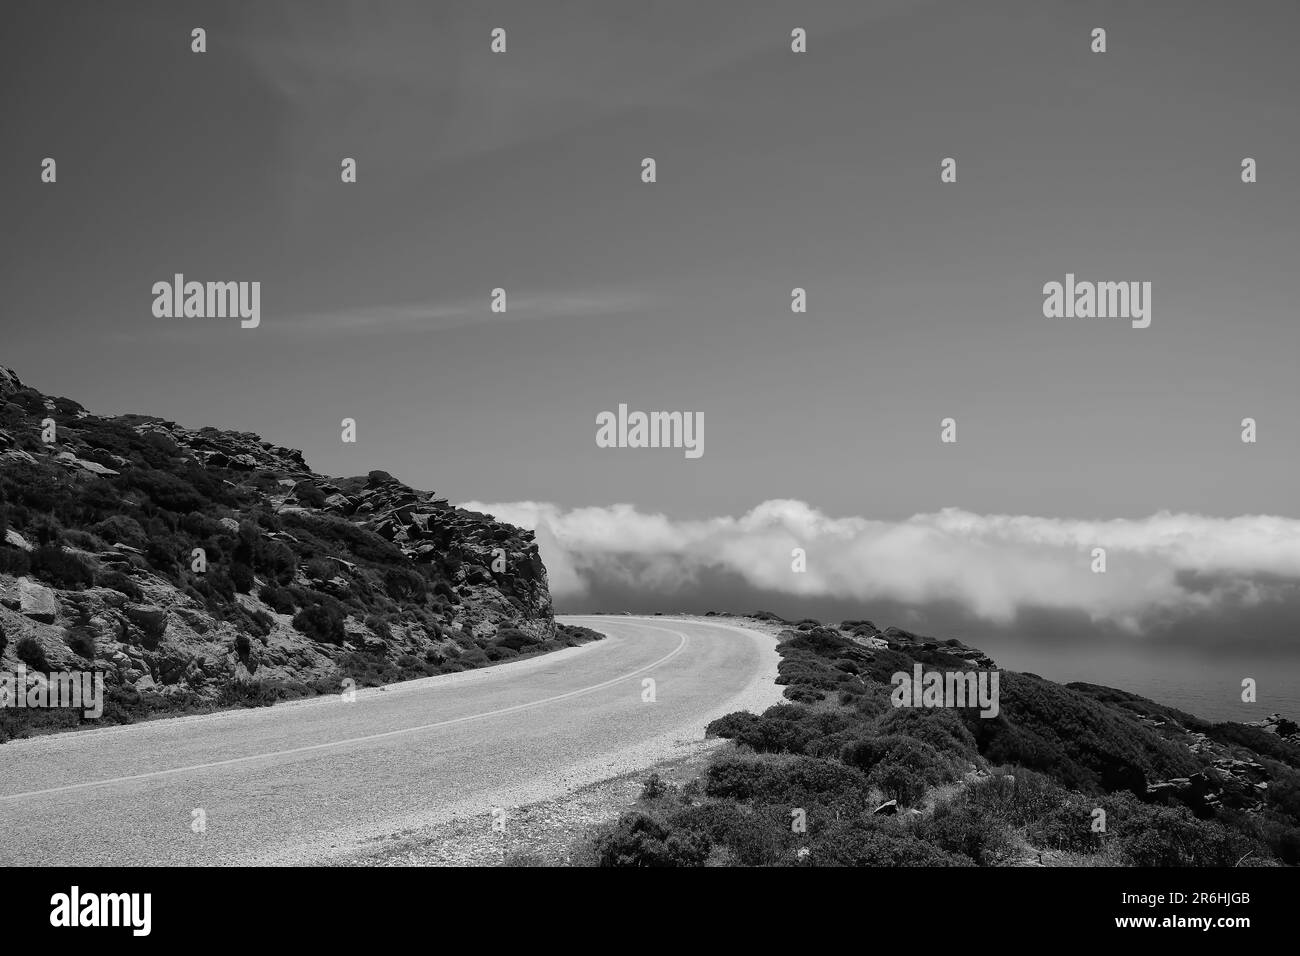 Eine einsame Straße auf einem Hügel und Wolken auf derselben Ebene in iOS kykladen Griechenland in Schwarz und Weiß Stockfoto